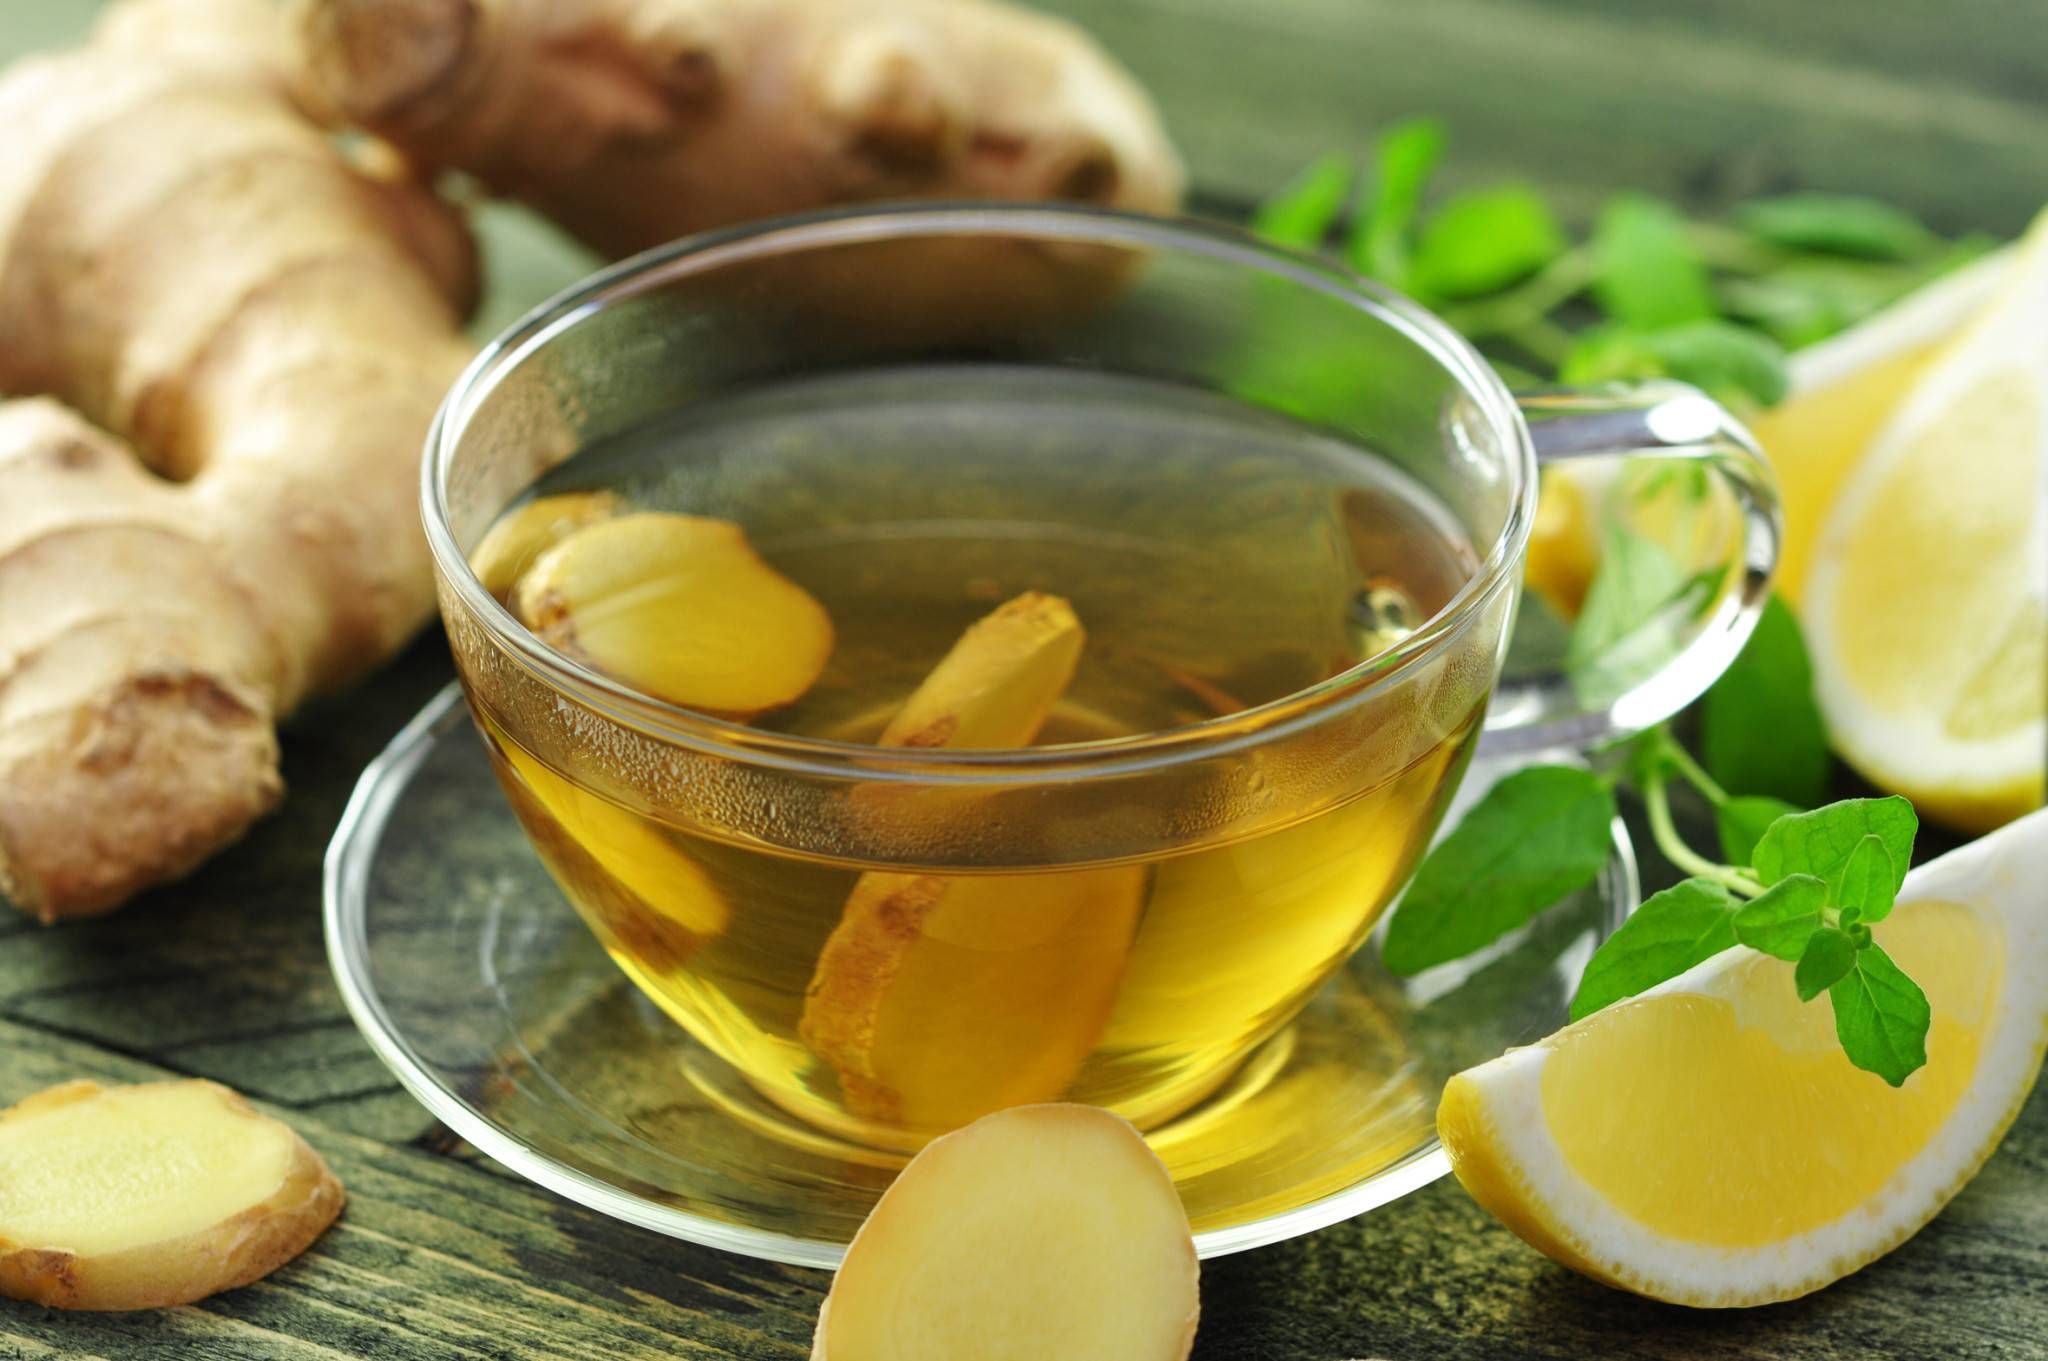 Имбирный чай для похудения, рецепт с имбирем и лимоном